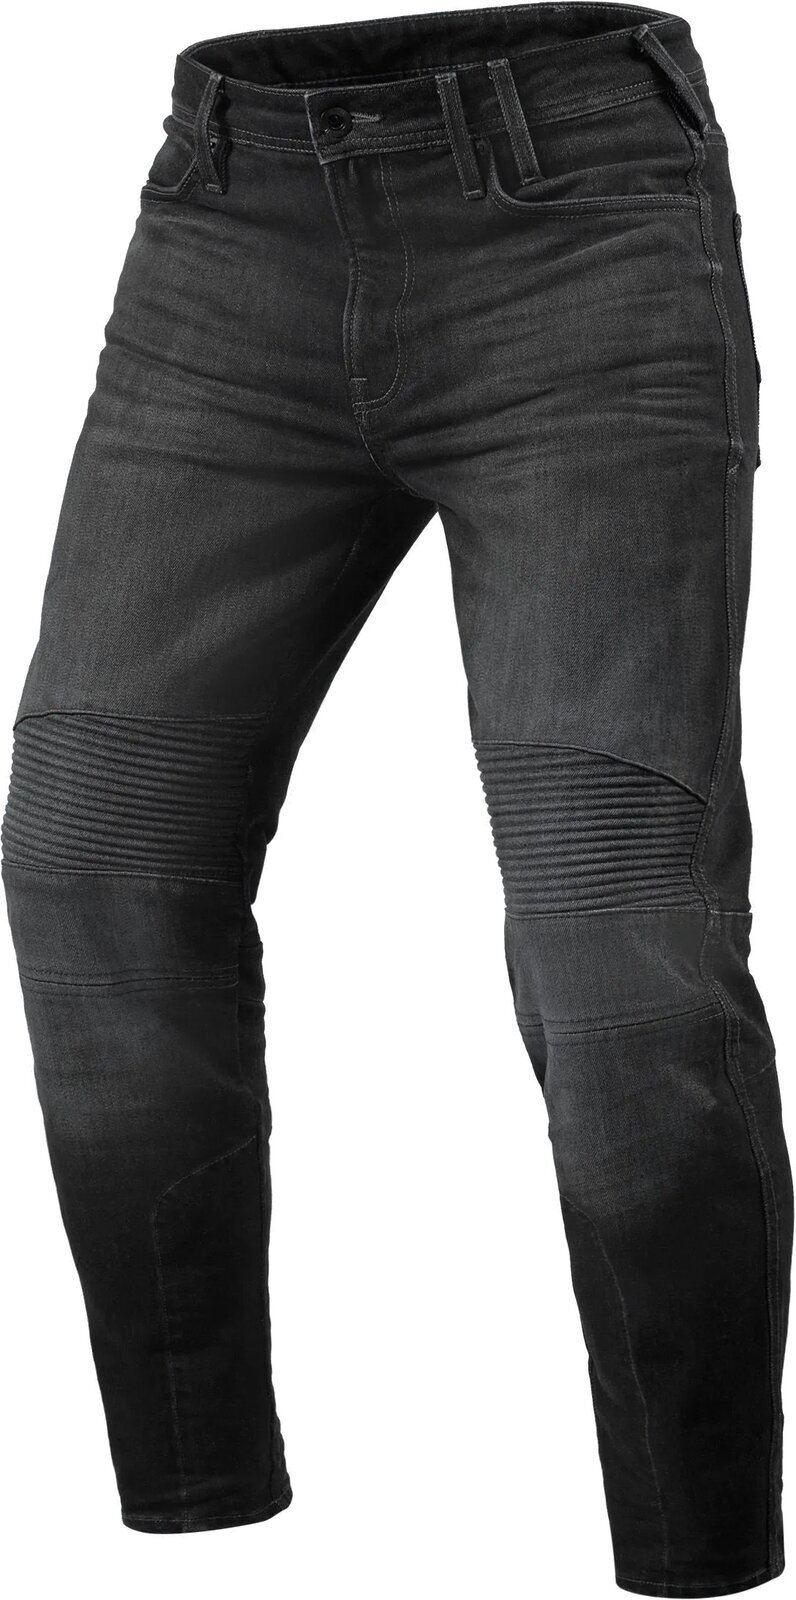 Motorjeans Rev'it! Jeans Moto 2 TF Dark Grey 32/30 Motorjeans